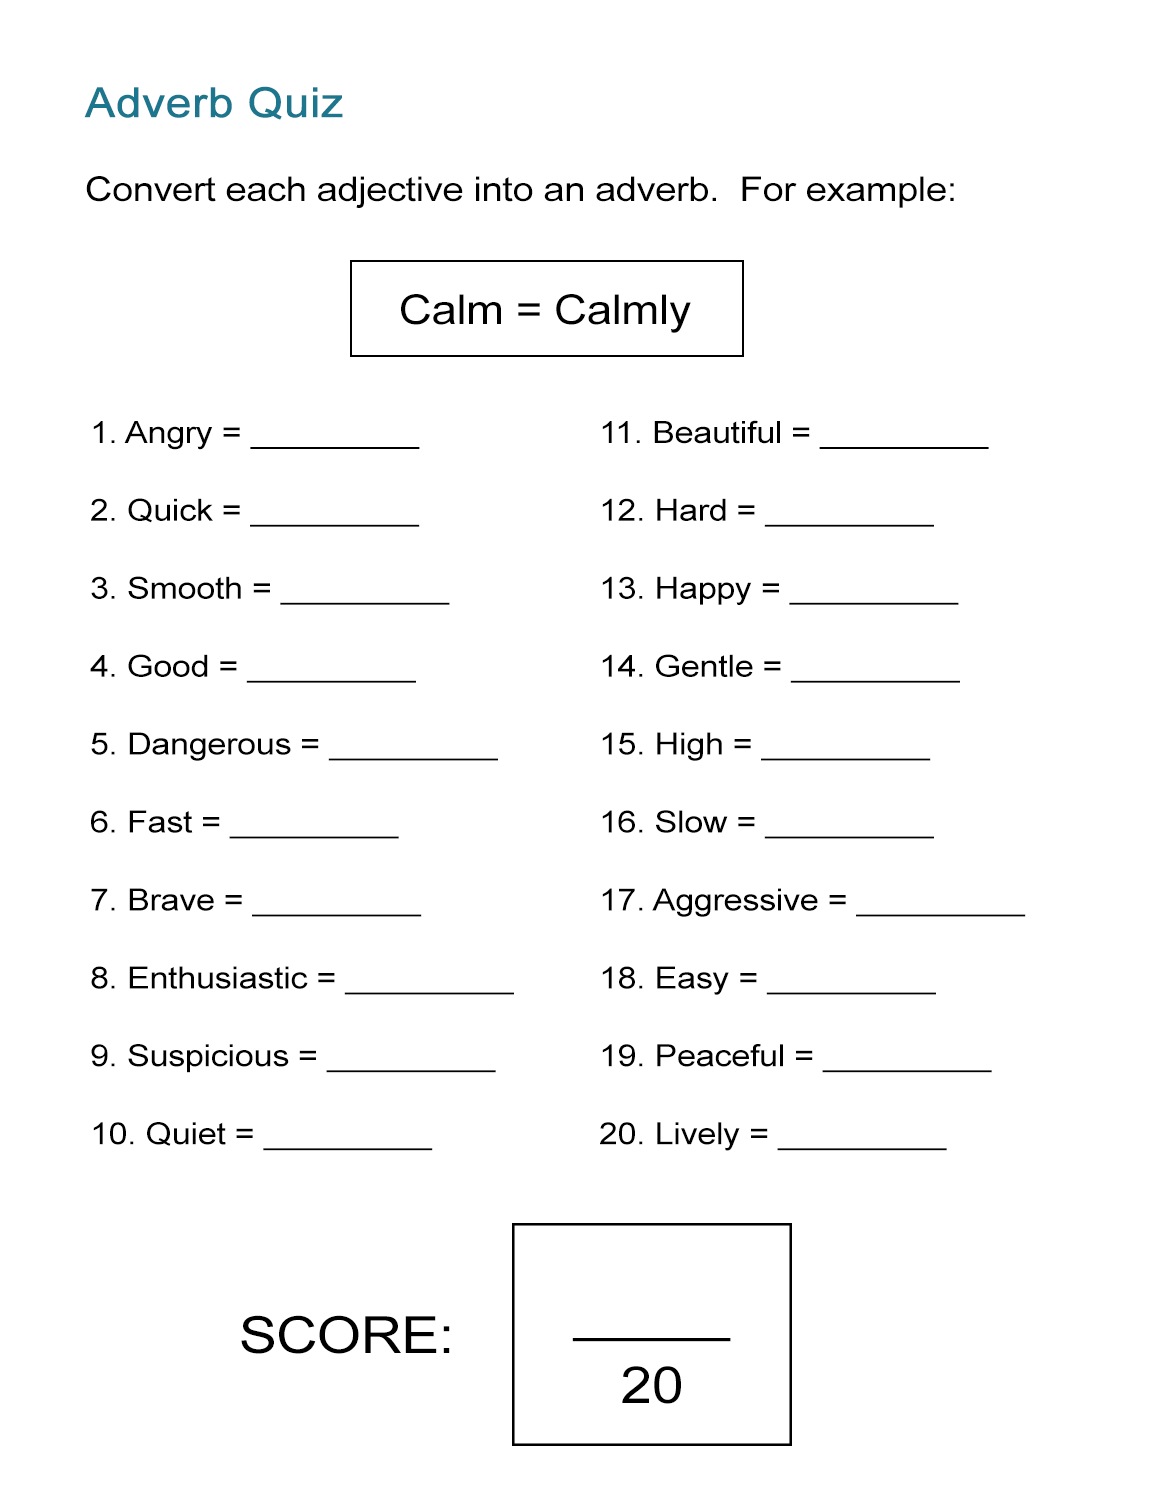 Adverbs Practice Worksheet